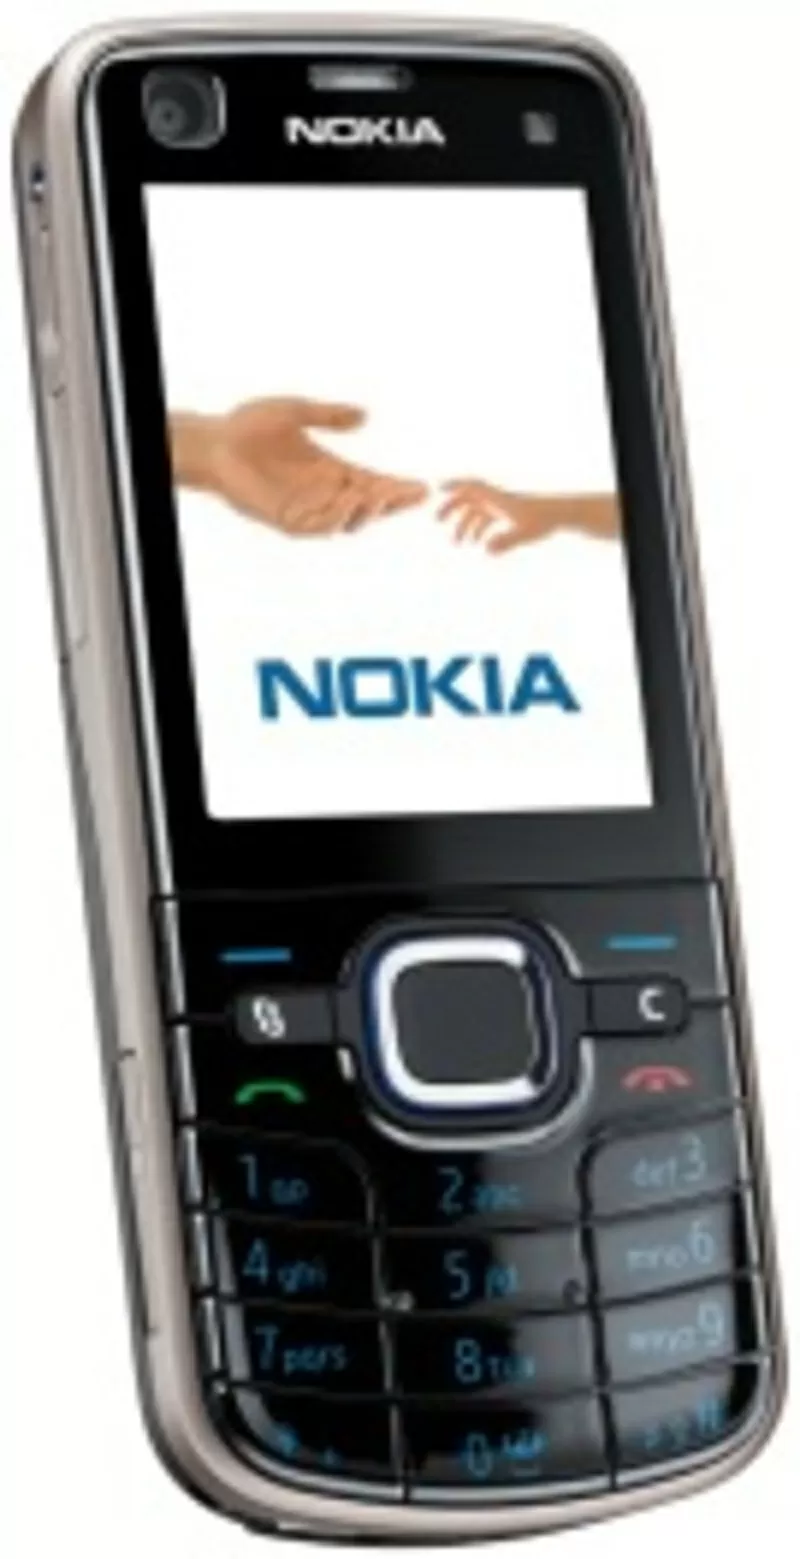 Nokia 6220 - classic